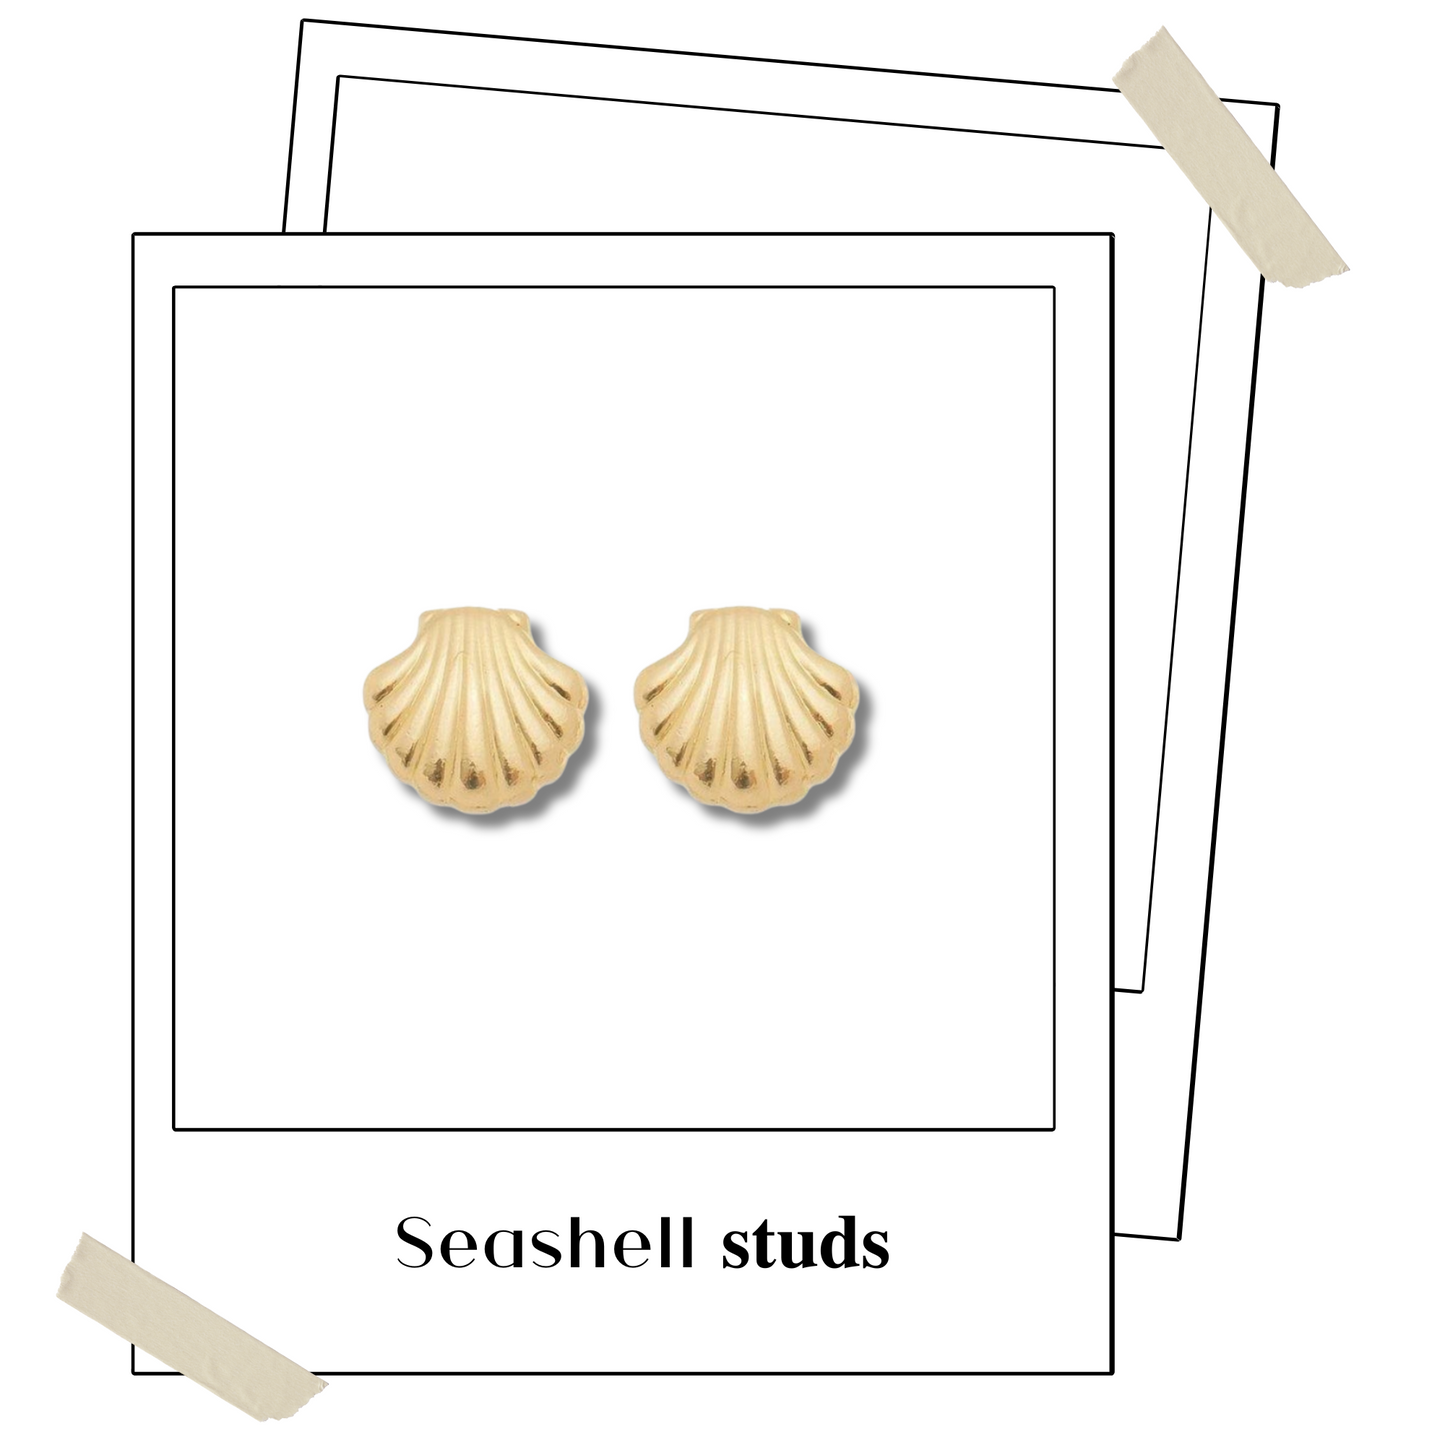 Seashell 𝐬𝐭𝐮𝐝𝐬